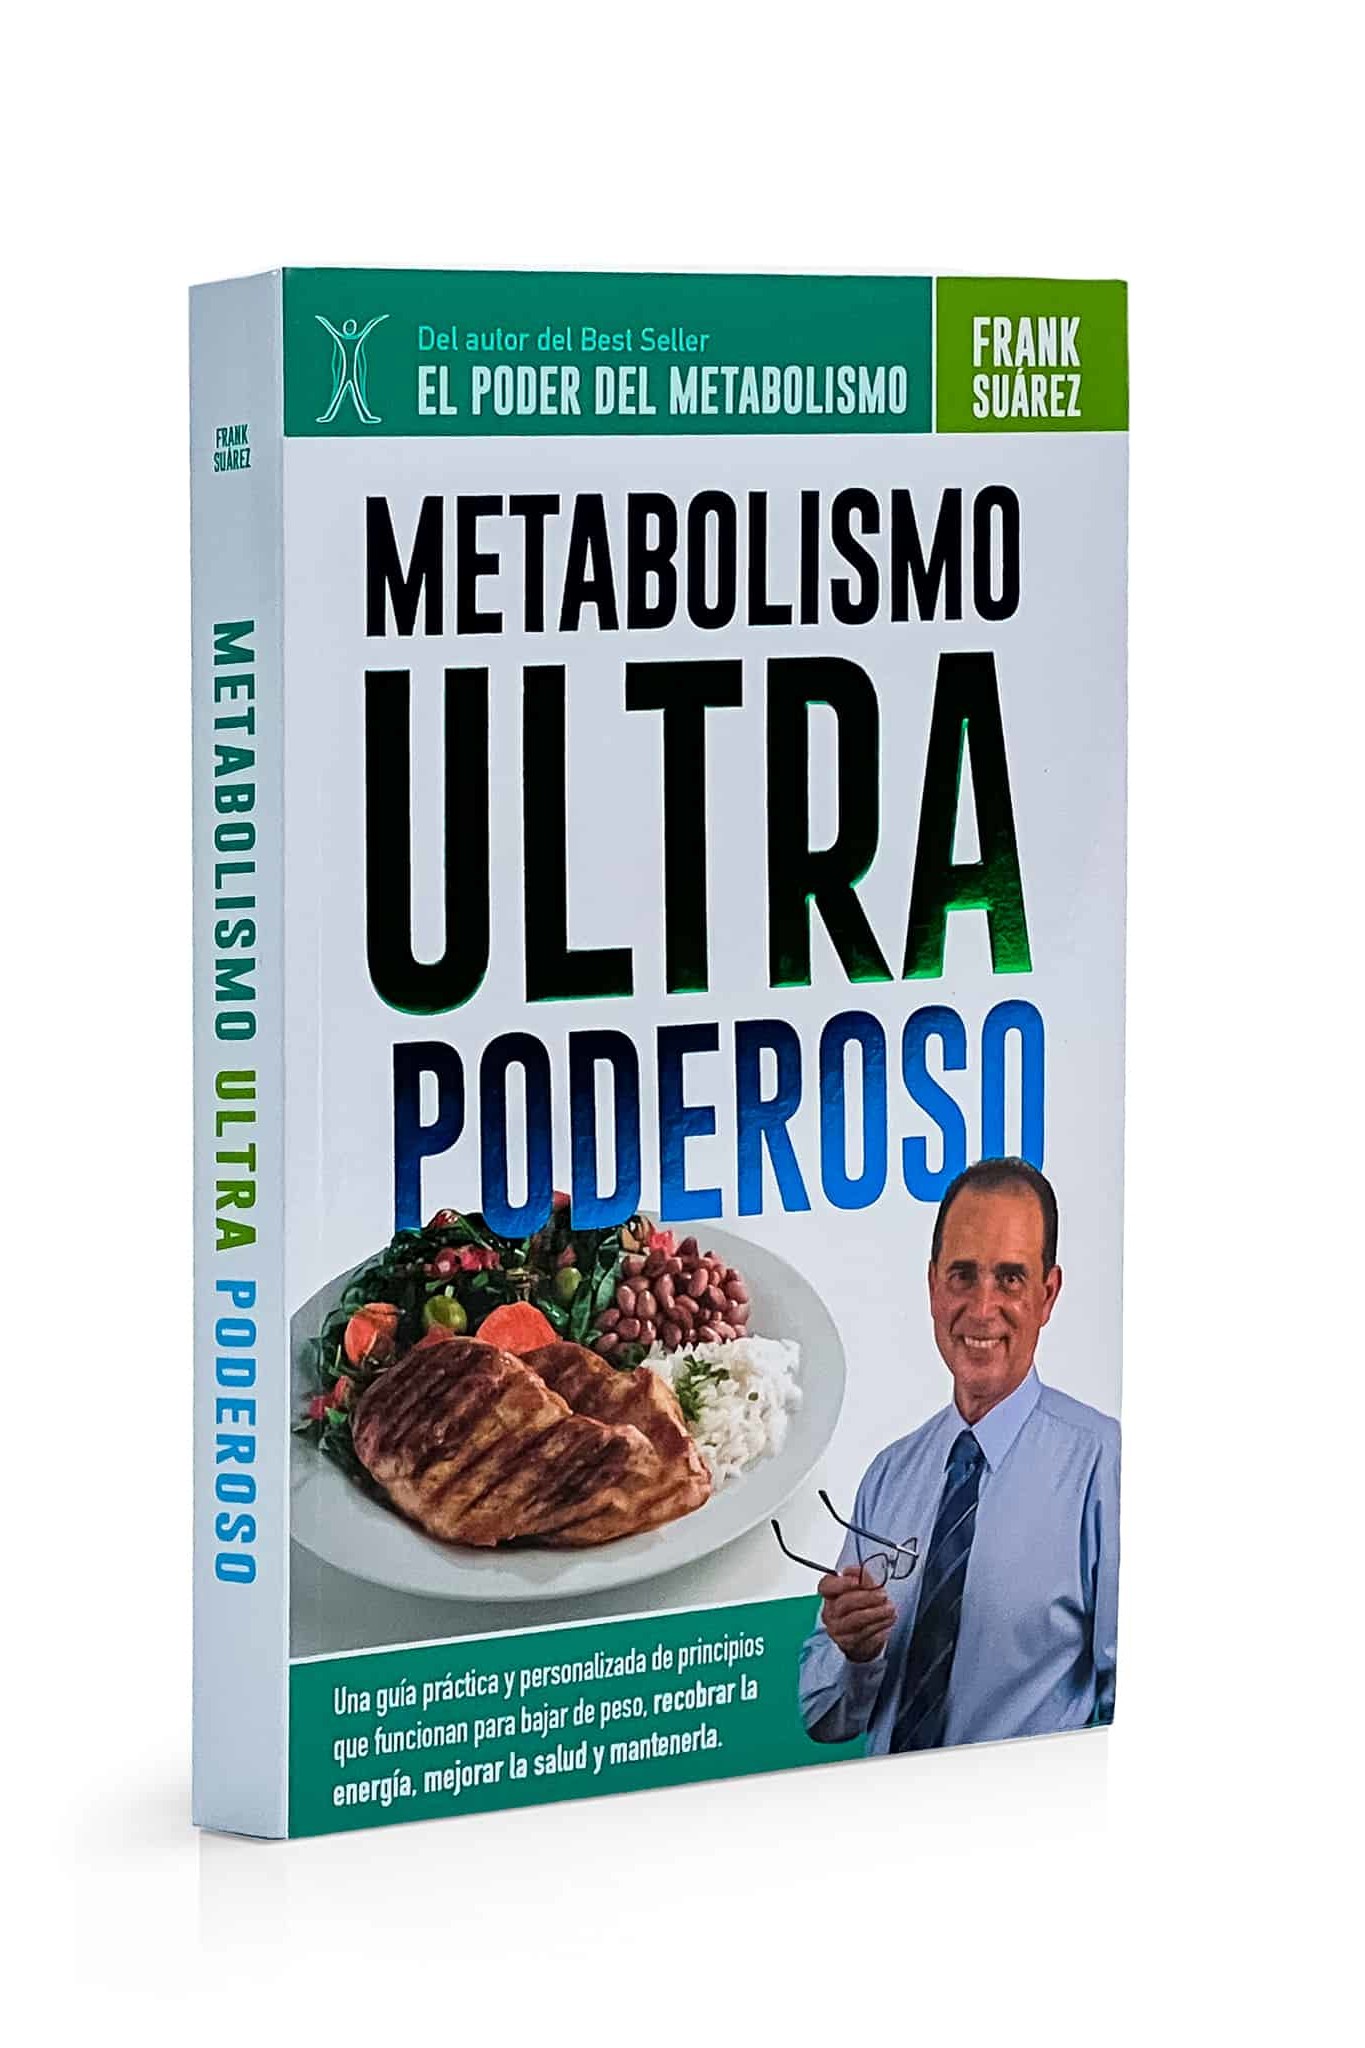 Libro Recetas El Poder del Metabolismo - Nueva Edición Interactiva –  NaturalSlim USA